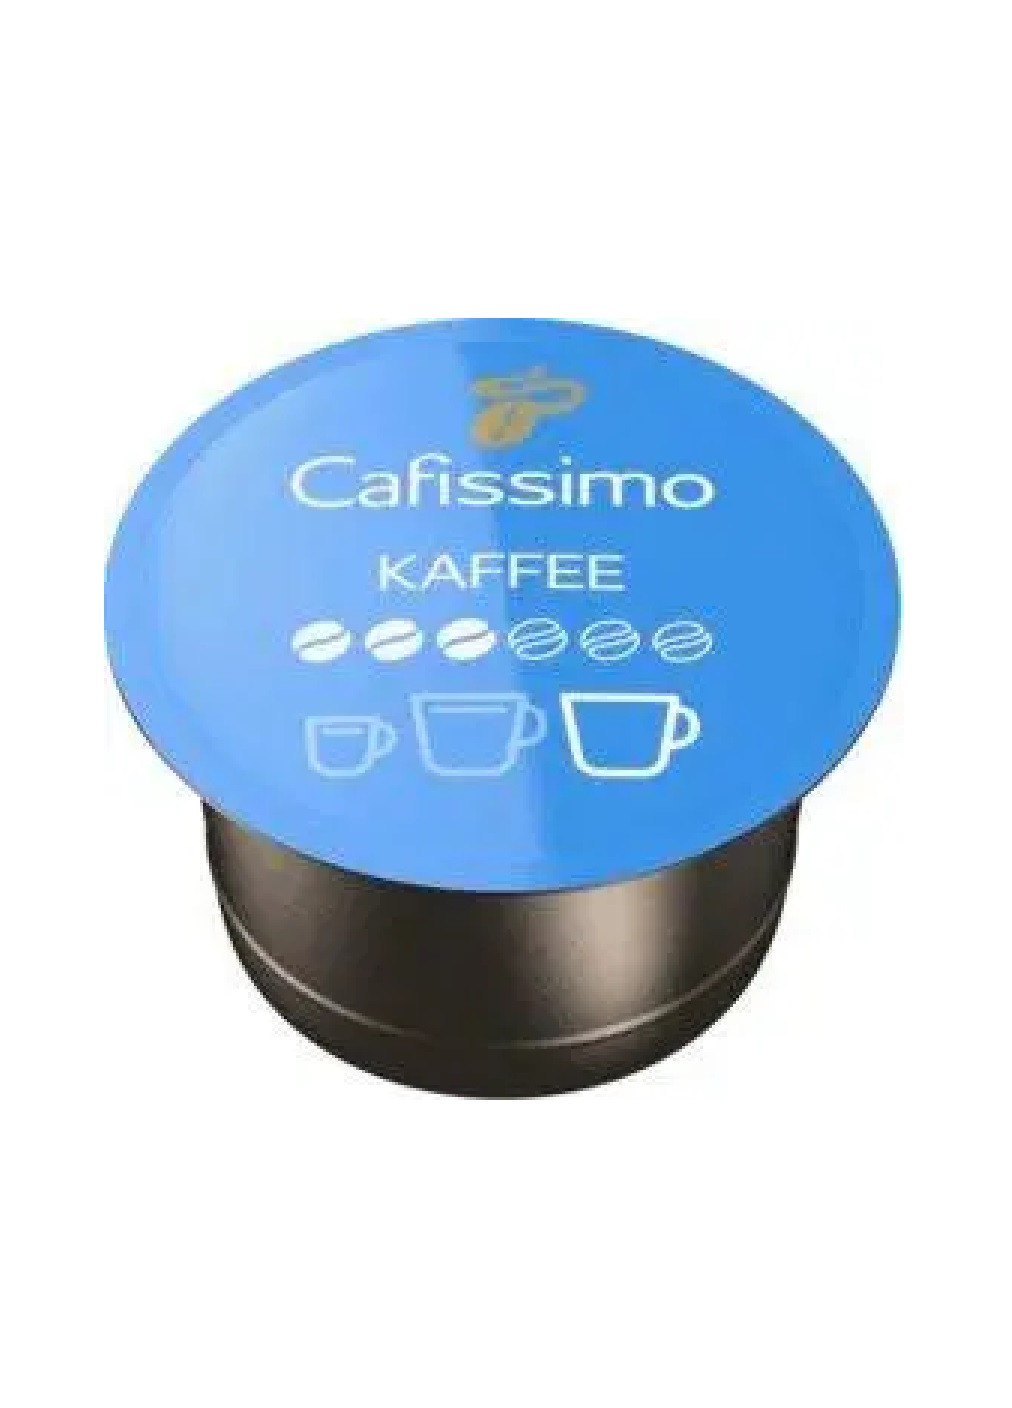 Комплект набор кофе эспрессо арабика в капсулах для кофемашины кафиссимо 96 шт (475560-Prob) С ароматом жареного кофе Unbranded (268735920)